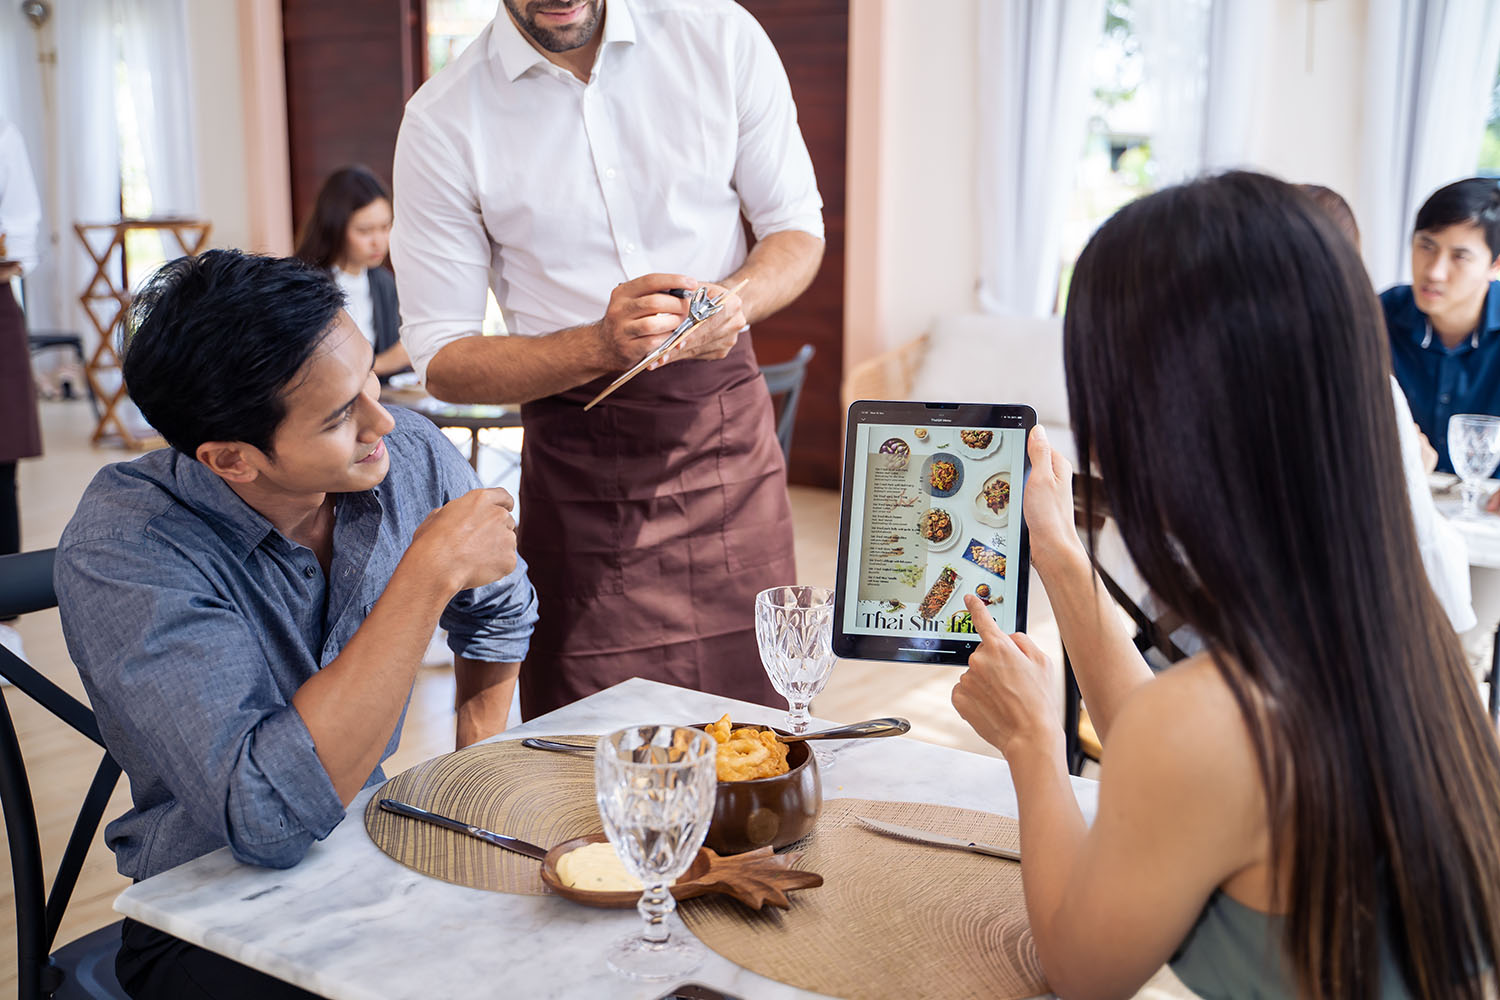 自助式餐廳透過 HiNet SME 超寬頻整合服務對於空間內無線網路的完整佈局，打造無紙化的平板數位點餐機制，成功加速出菜的效率，獲得來訪顧客的一致好評。